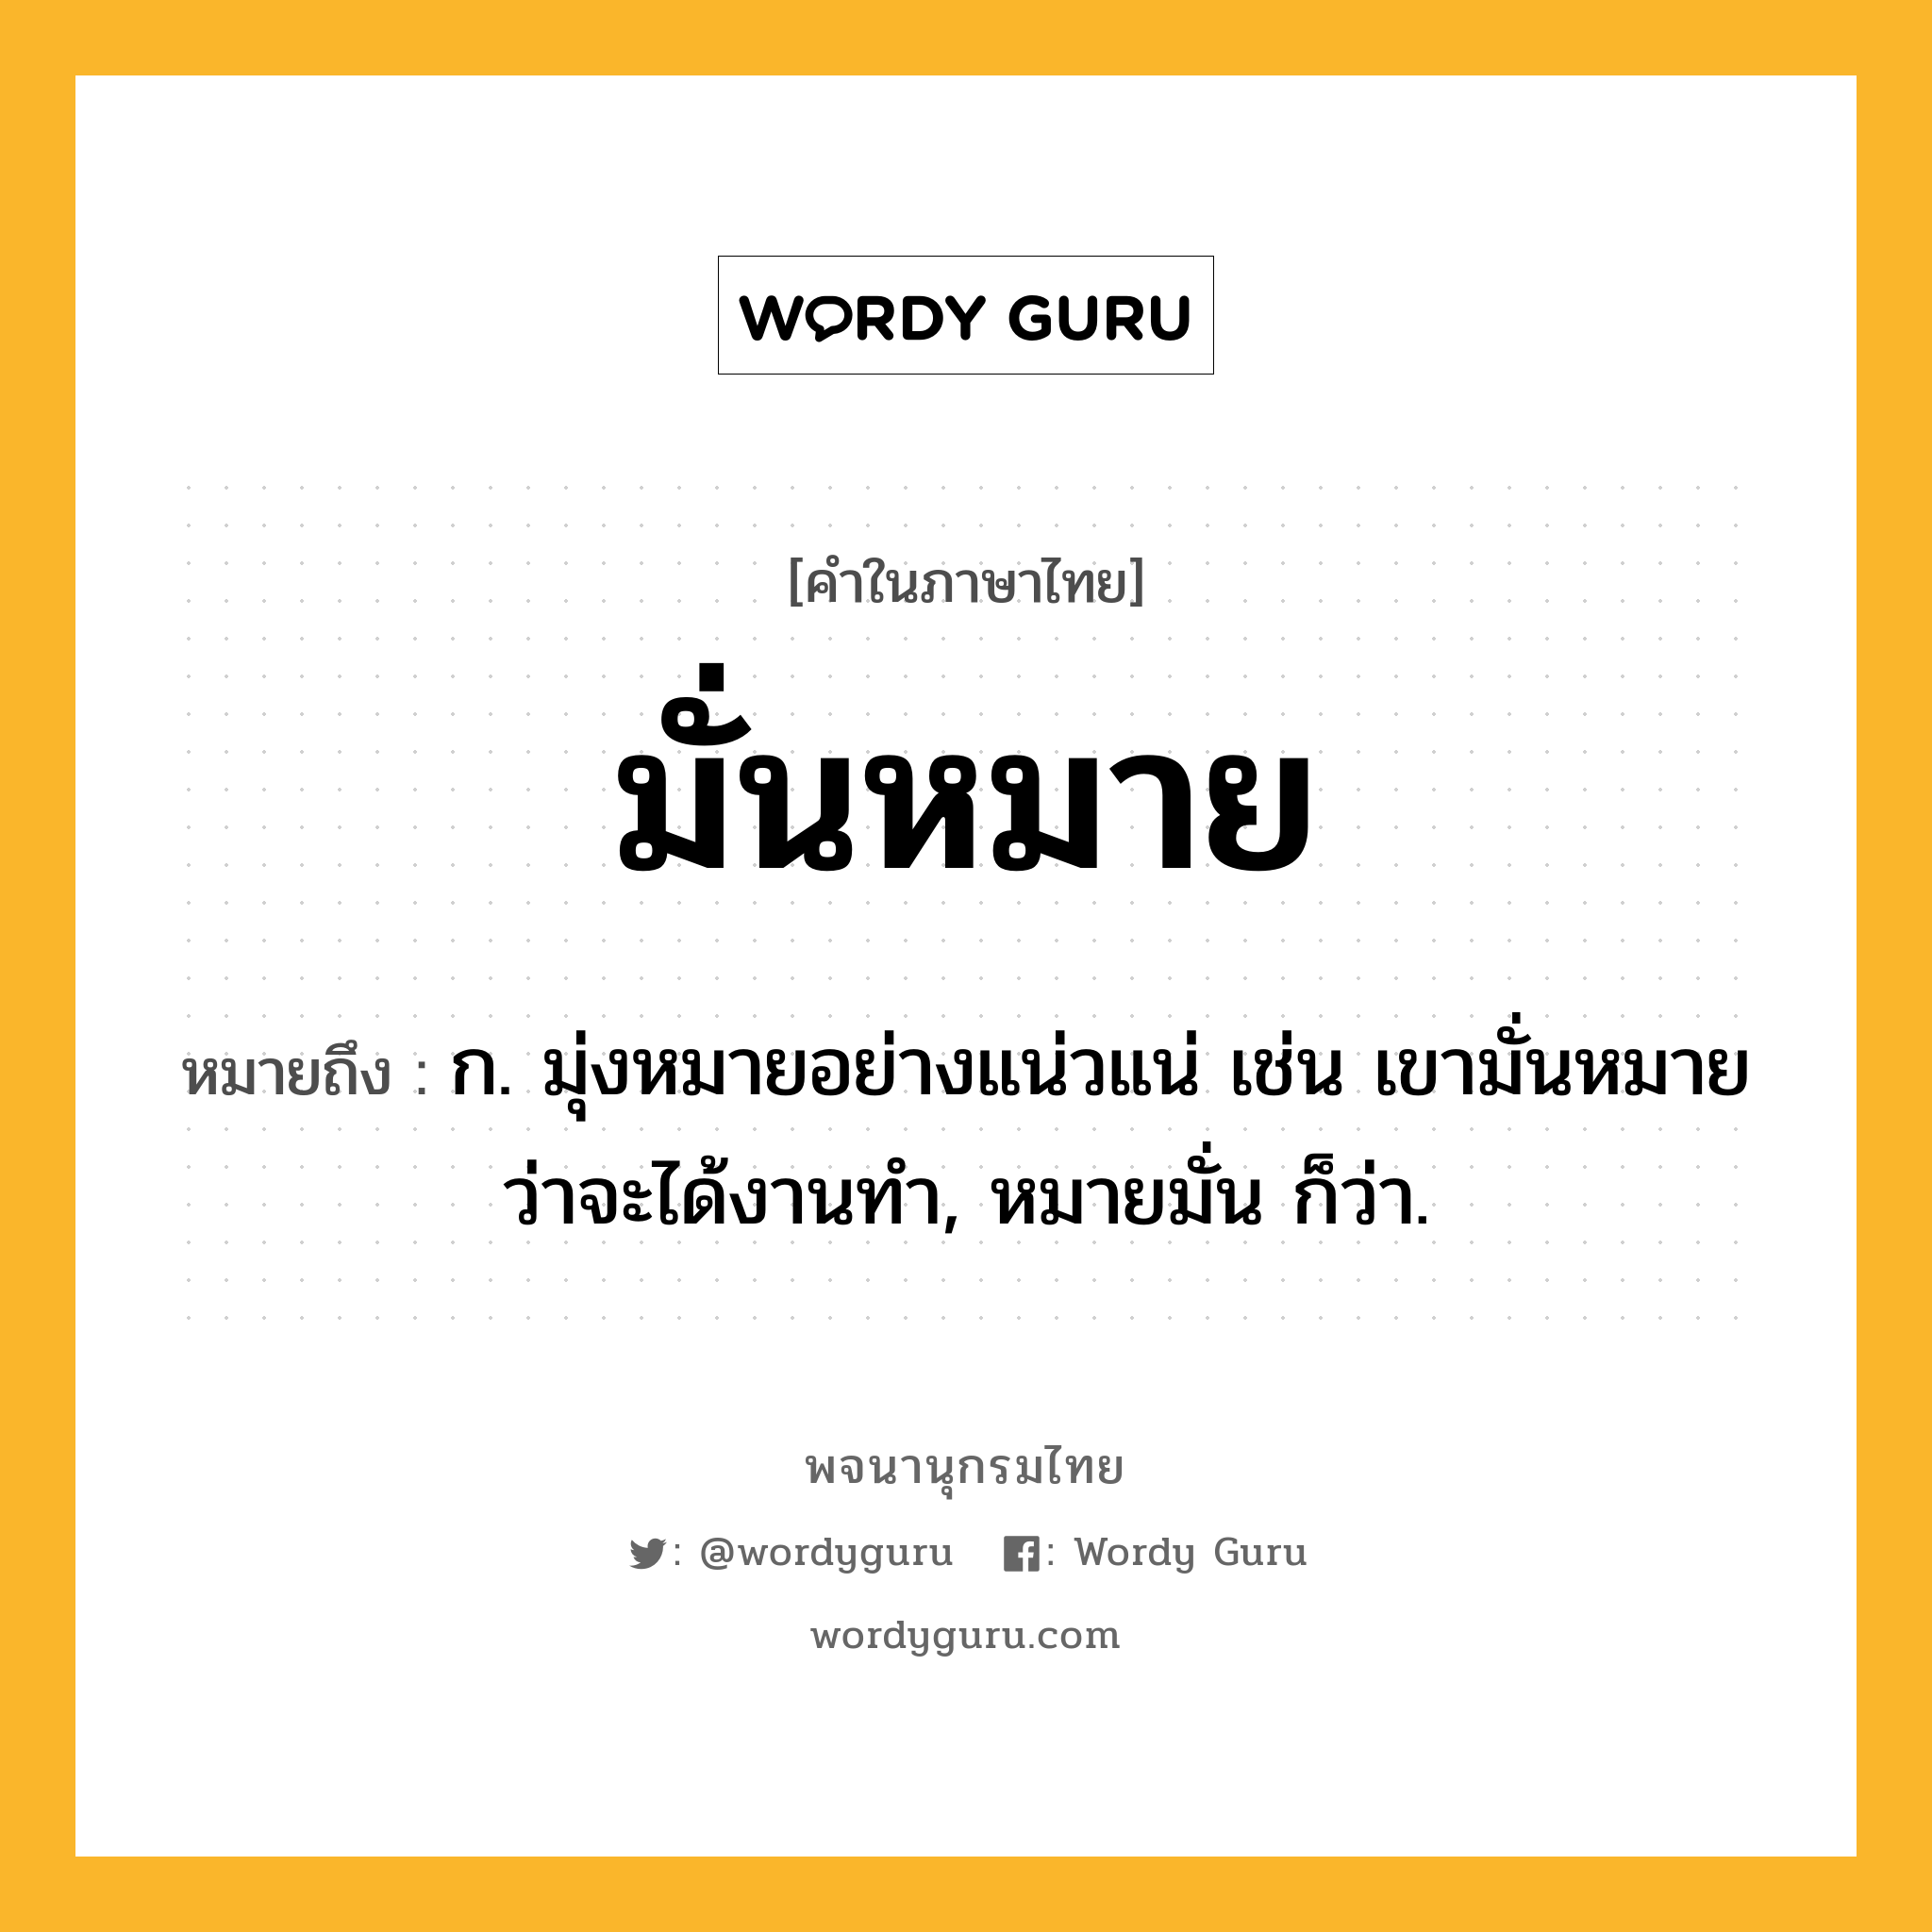 มั่นหมาย หมายถึงอะไร?, คำในภาษาไทย มั่นหมาย หมายถึง ก. มุ่งหมายอย่างแน่วแน่ เช่น เขามั่นหมายว่าจะได้งานทำ, หมายมั่น ก็ว่า.